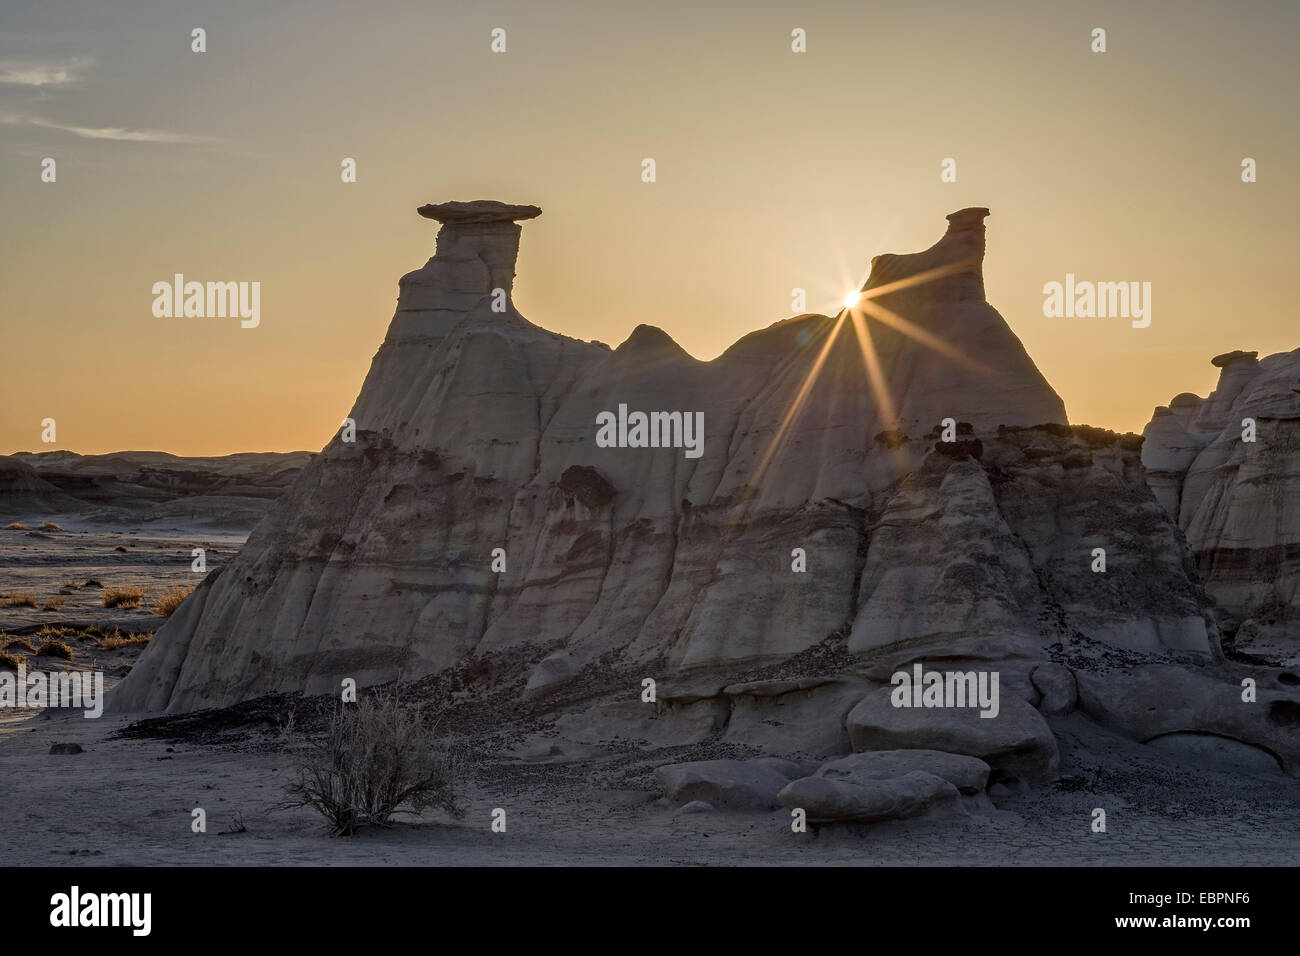 Sunburst derrière une formation rocheuse, Bisti Wilderness, Nouveau Mexique, États-Unis d'Amérique, Amérique du Nord Banque D'Images